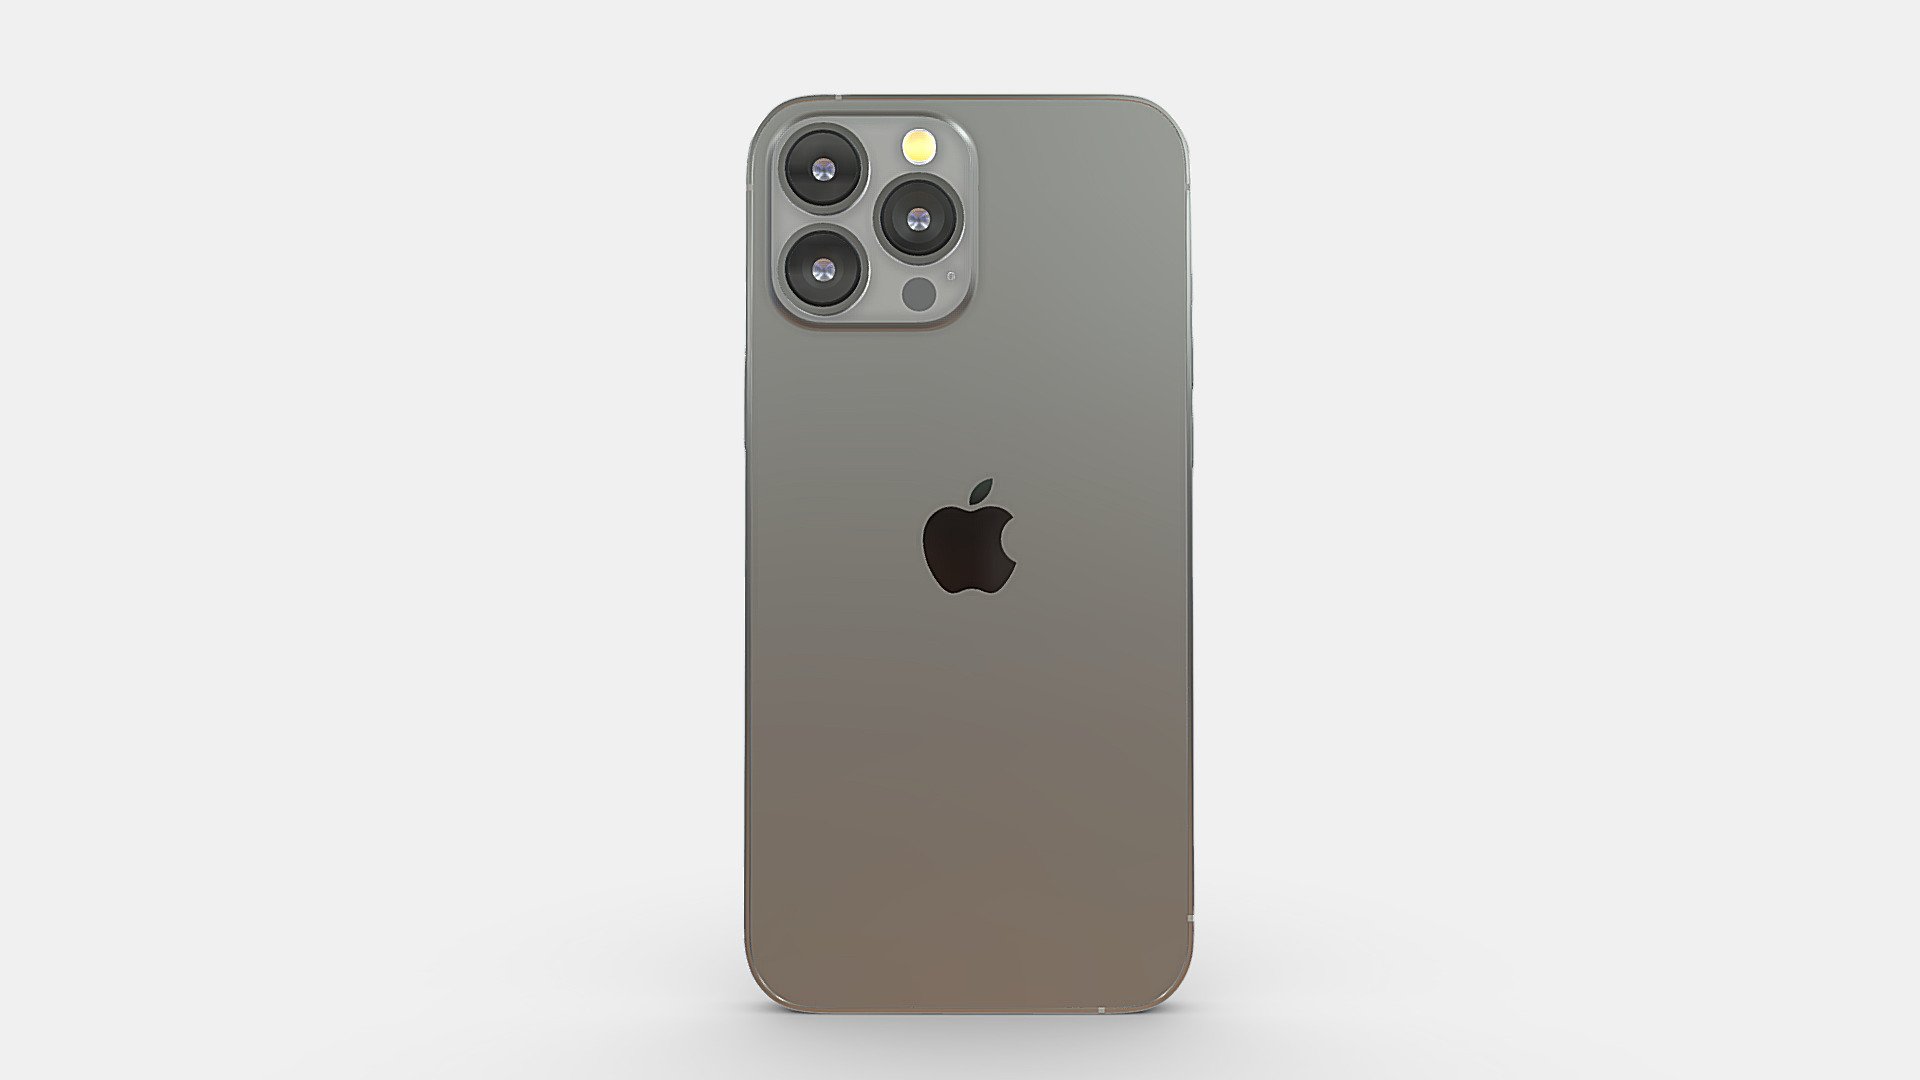 Hãy khám phá vẻ đẹp hoàn mỹ của iPhone 13 Pro Max 3D model. Với thiết kế độc đáo, công nghệ tiên tiến và chất lượng hình ảnh cực kỳ sắc nét, iPhone 13 Pro Max 3D model là một sản phẩm không thể bỏ qua đối với những ai yêu thích công nghệ và sự hoàn hảo. Hãy xem hình ảnh và trải nghiệm vẻ đẹp đầy thi vị của iPhone 13 Pro Max 3D model ngay hôm nay.